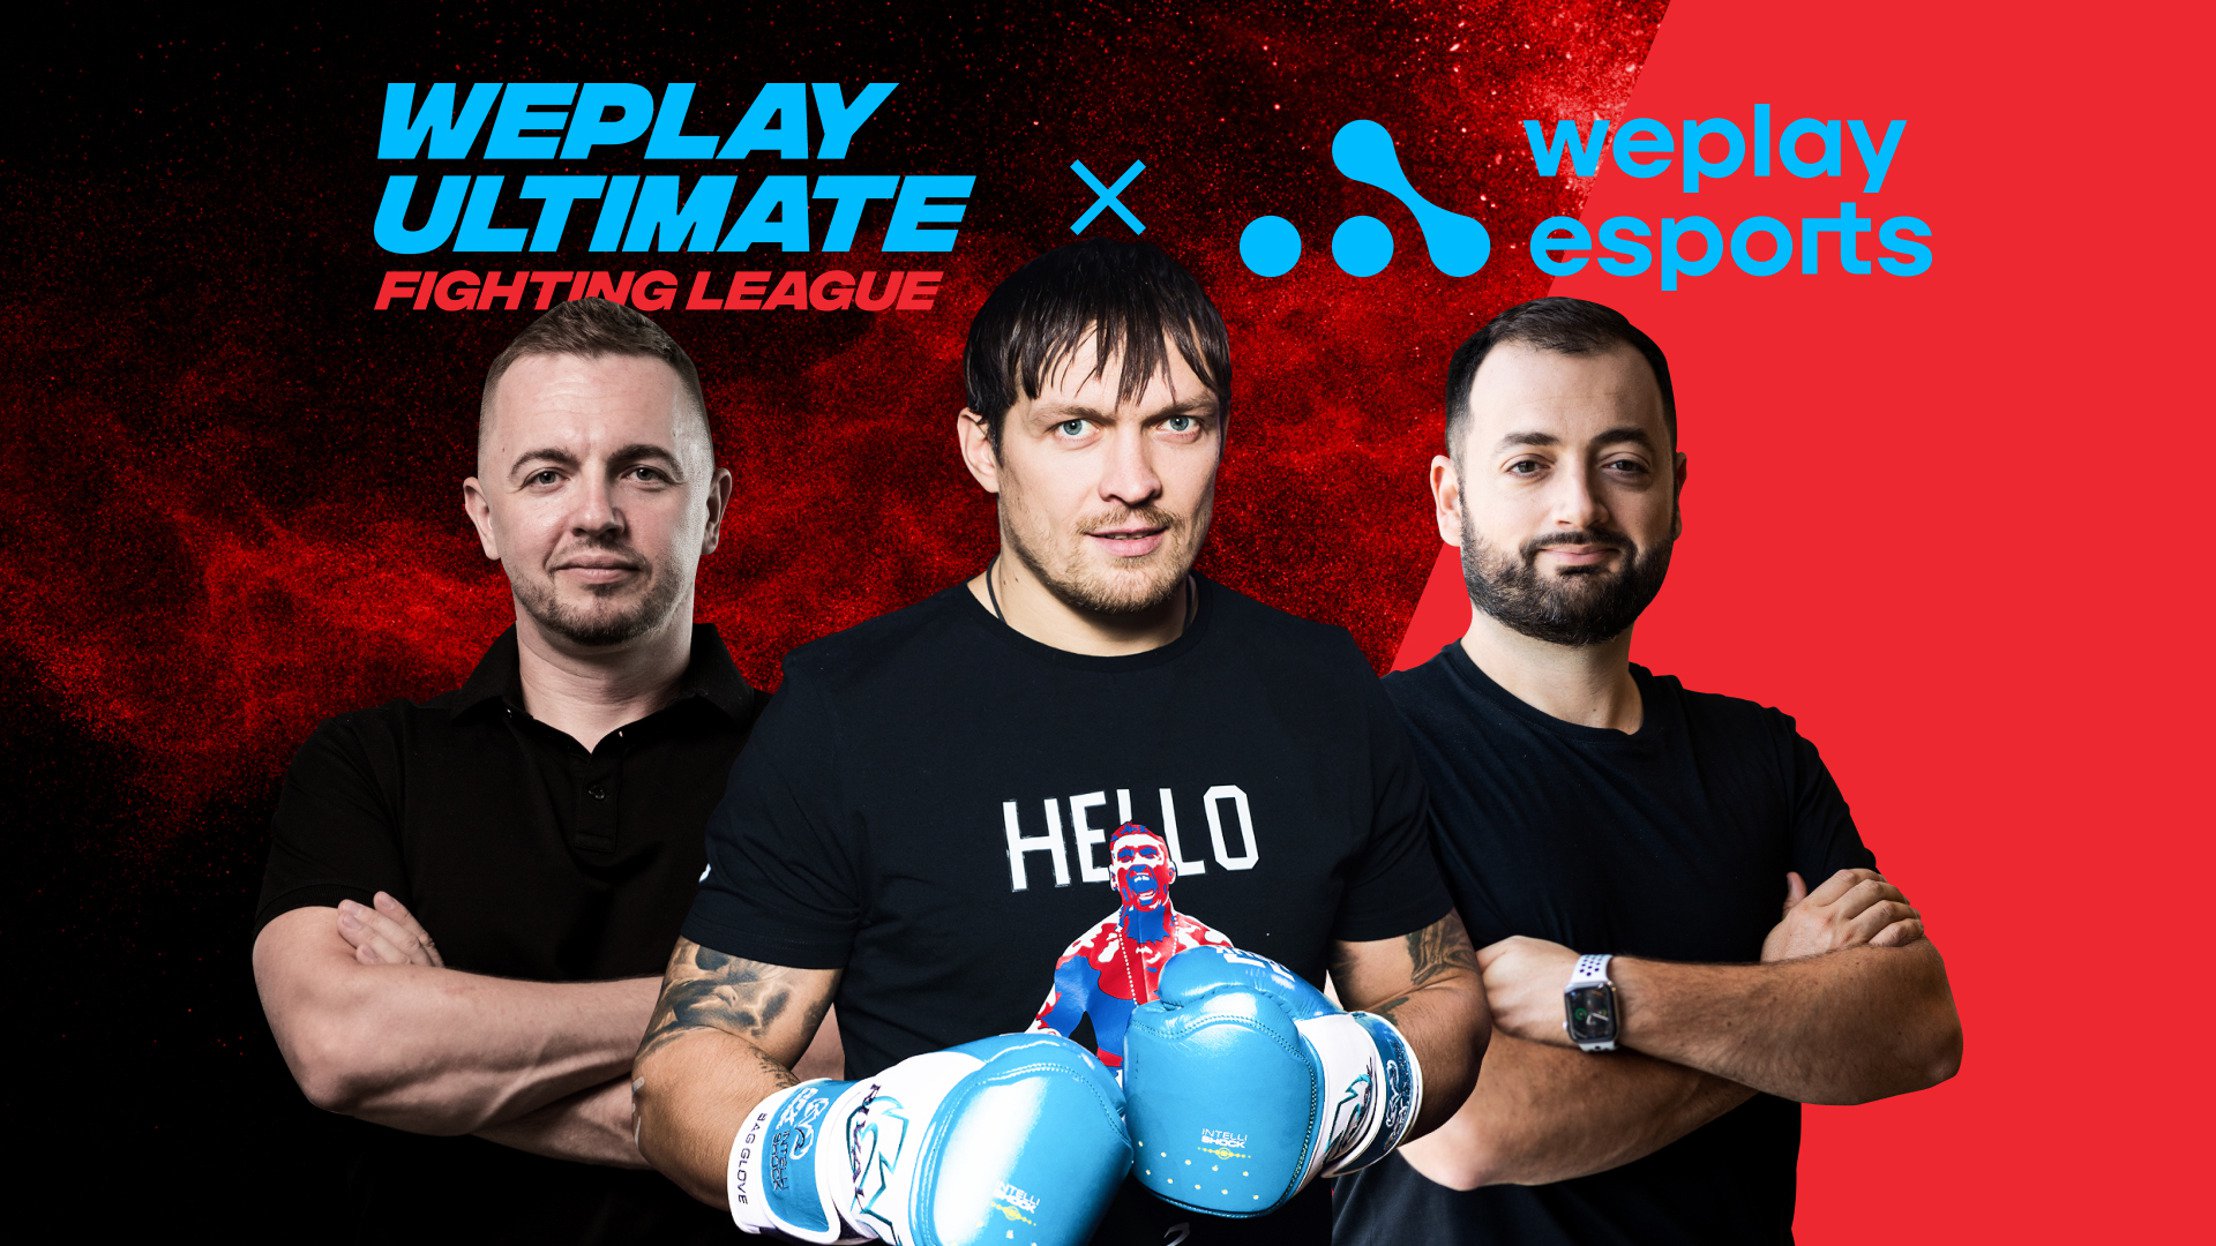 Campeão Mundial de Boxe Oleksandr Usyk Se Junta Aos Esports com a WePlay Holding